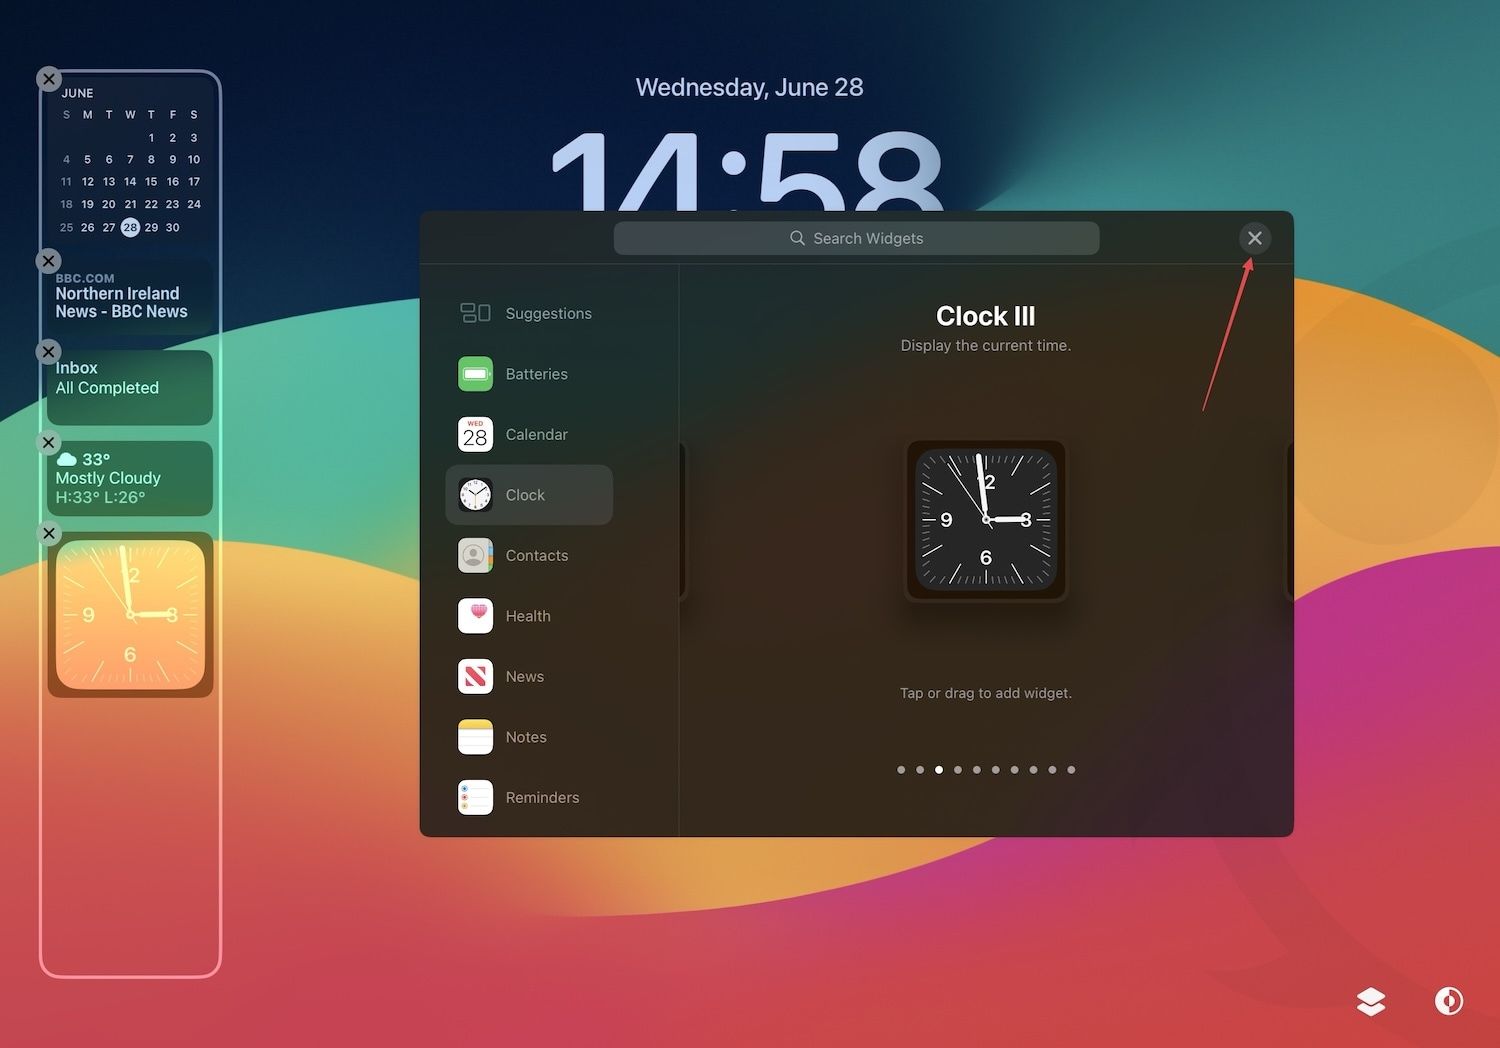 iPad lock screen with widgets